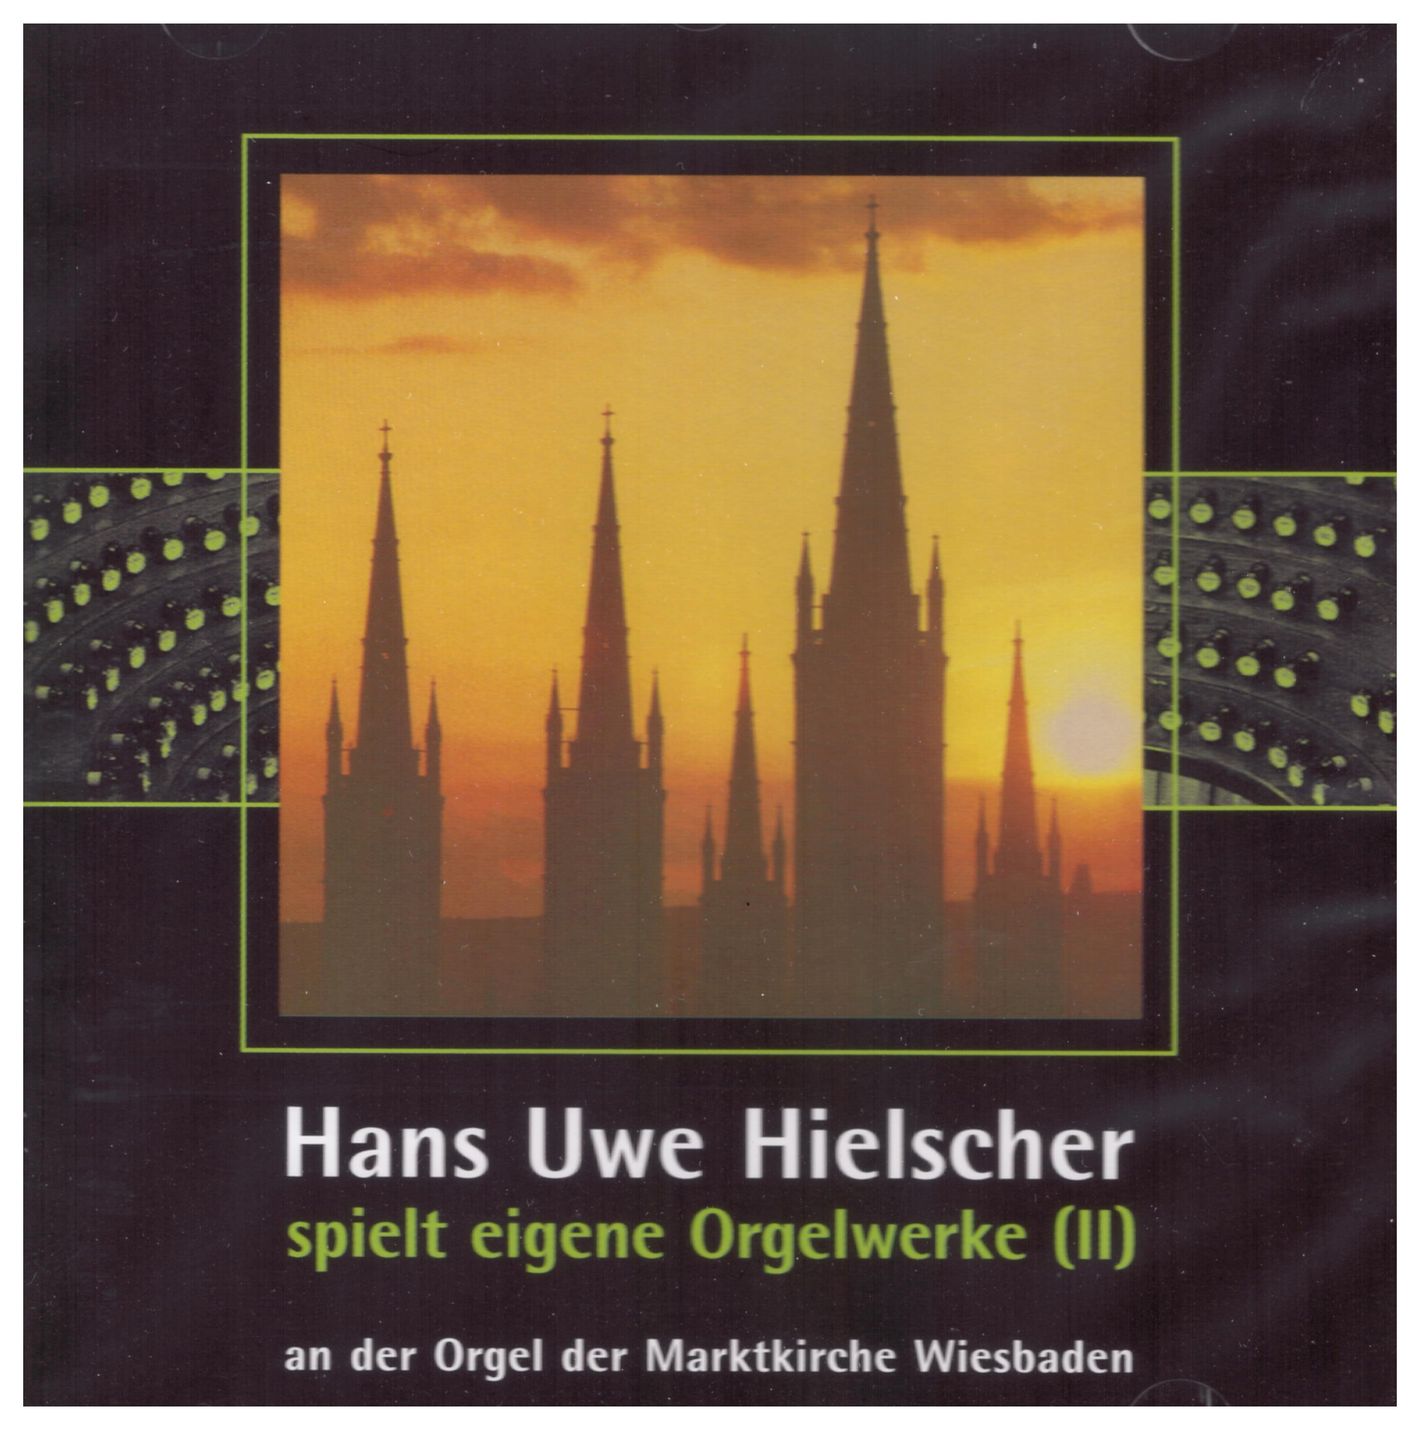 Hans Uwe Hielscher spielt eigene Orgelwerke (II)